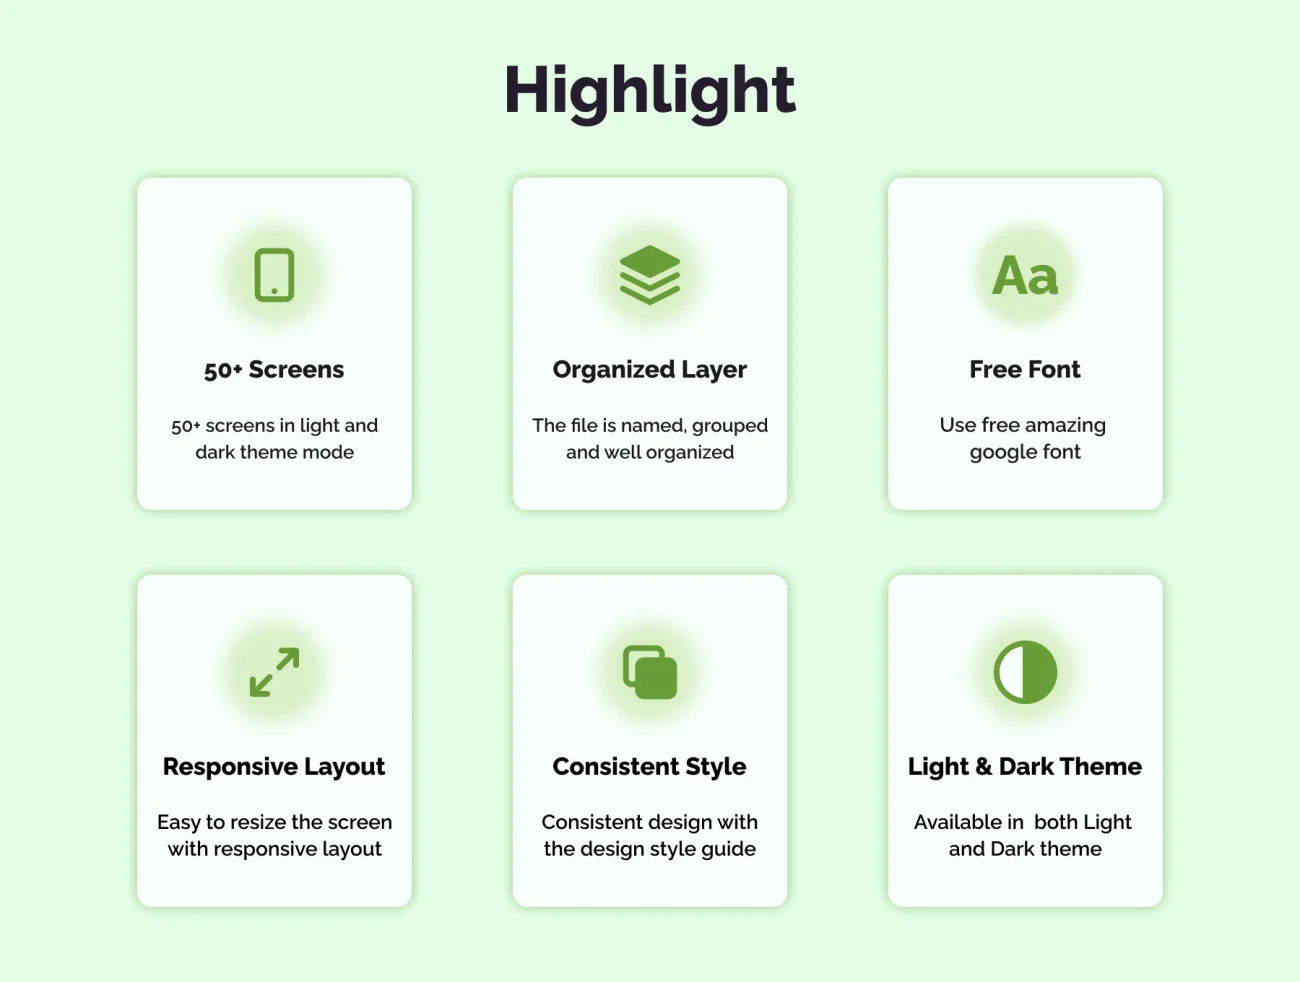 50屏生活百货蔬菜水果采购应用UI设计套件 Groshop – Groceries App UI Kit .figma插图3